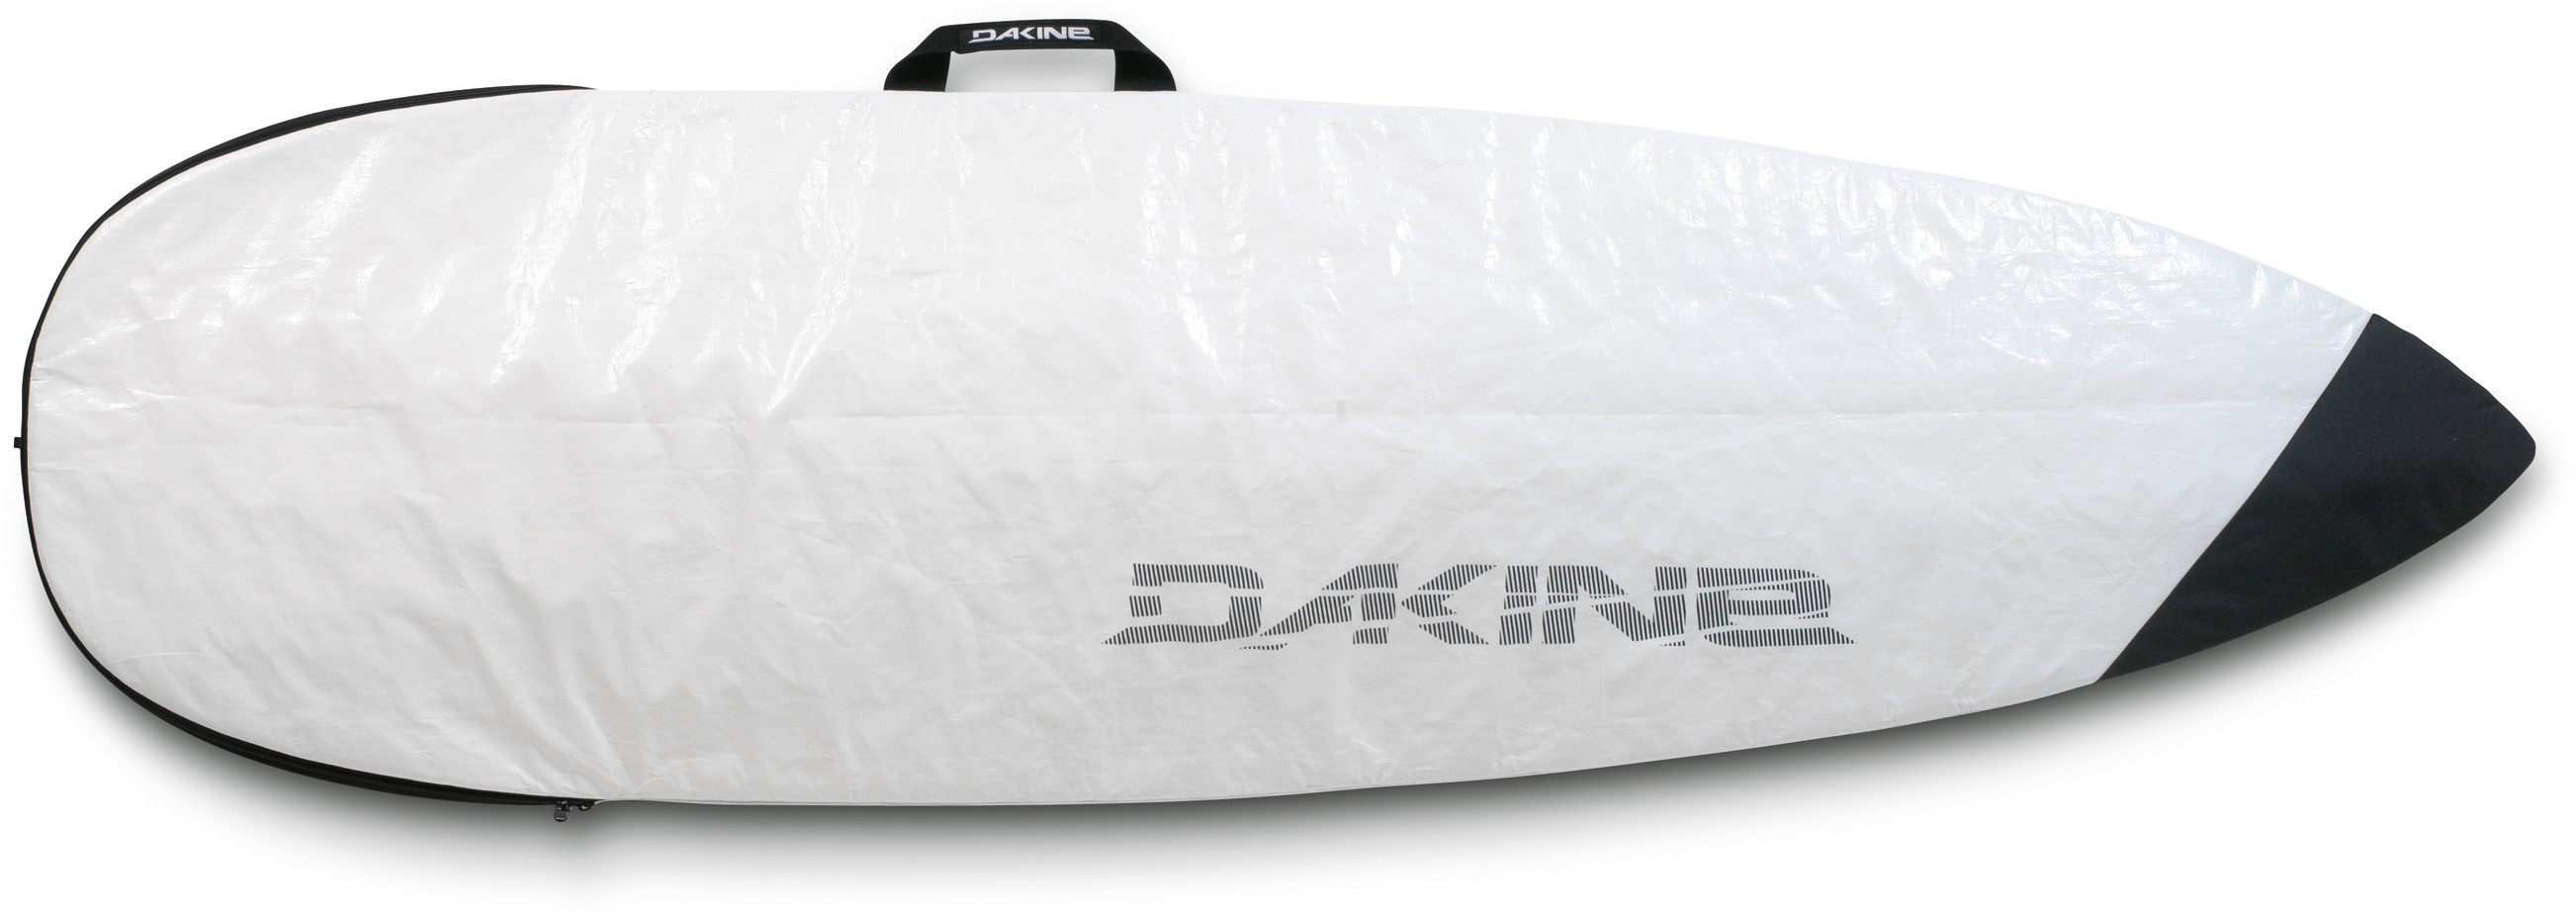 SHUTTLE SURF BAG THRUSTER 7'0, WHITE